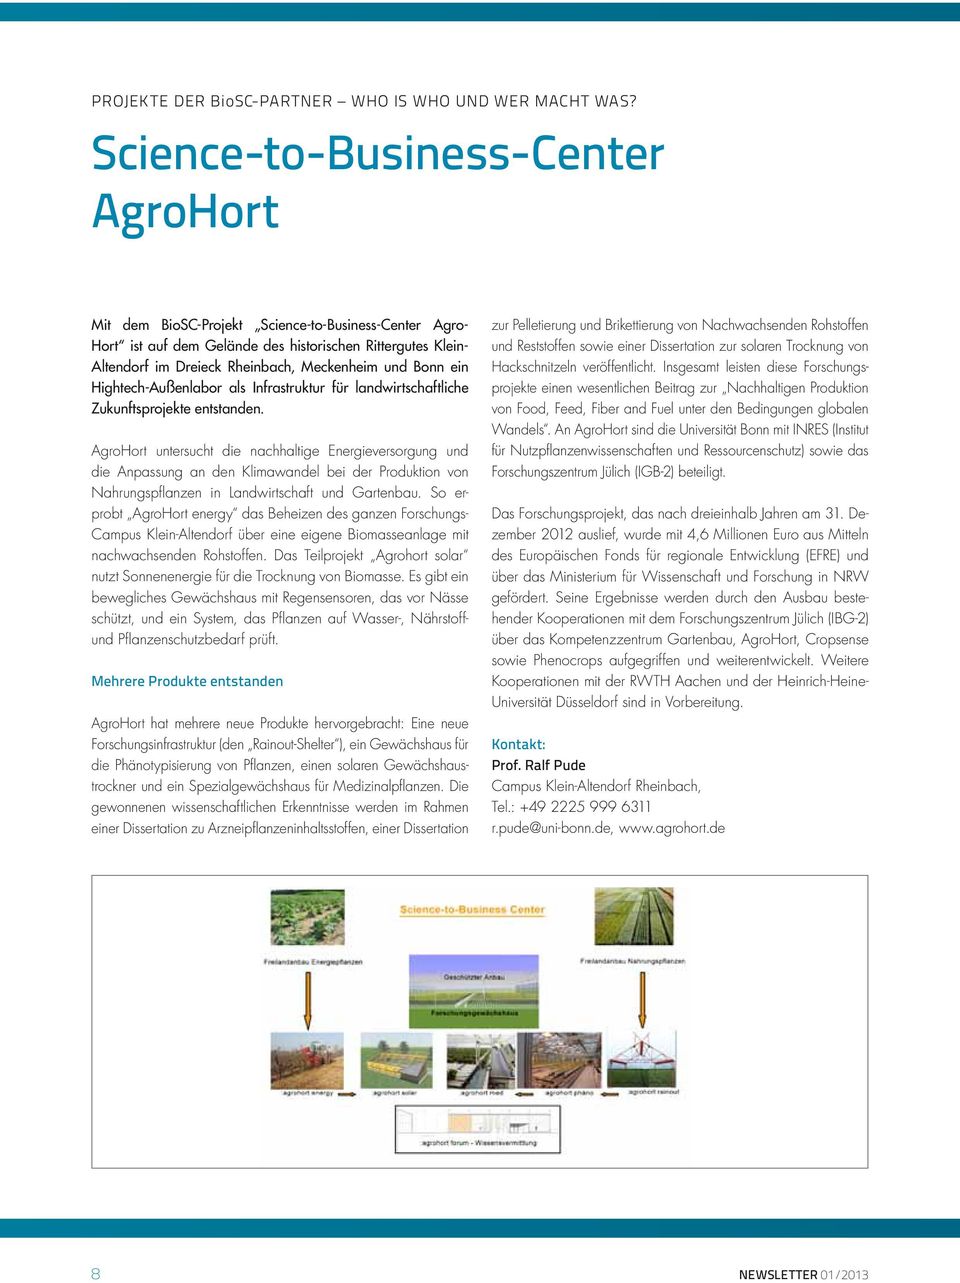 Bonn ein Hightech-Außenlabor als Infrastruktur für landwirtschaftliche Zukunftsprojekte entstanden.